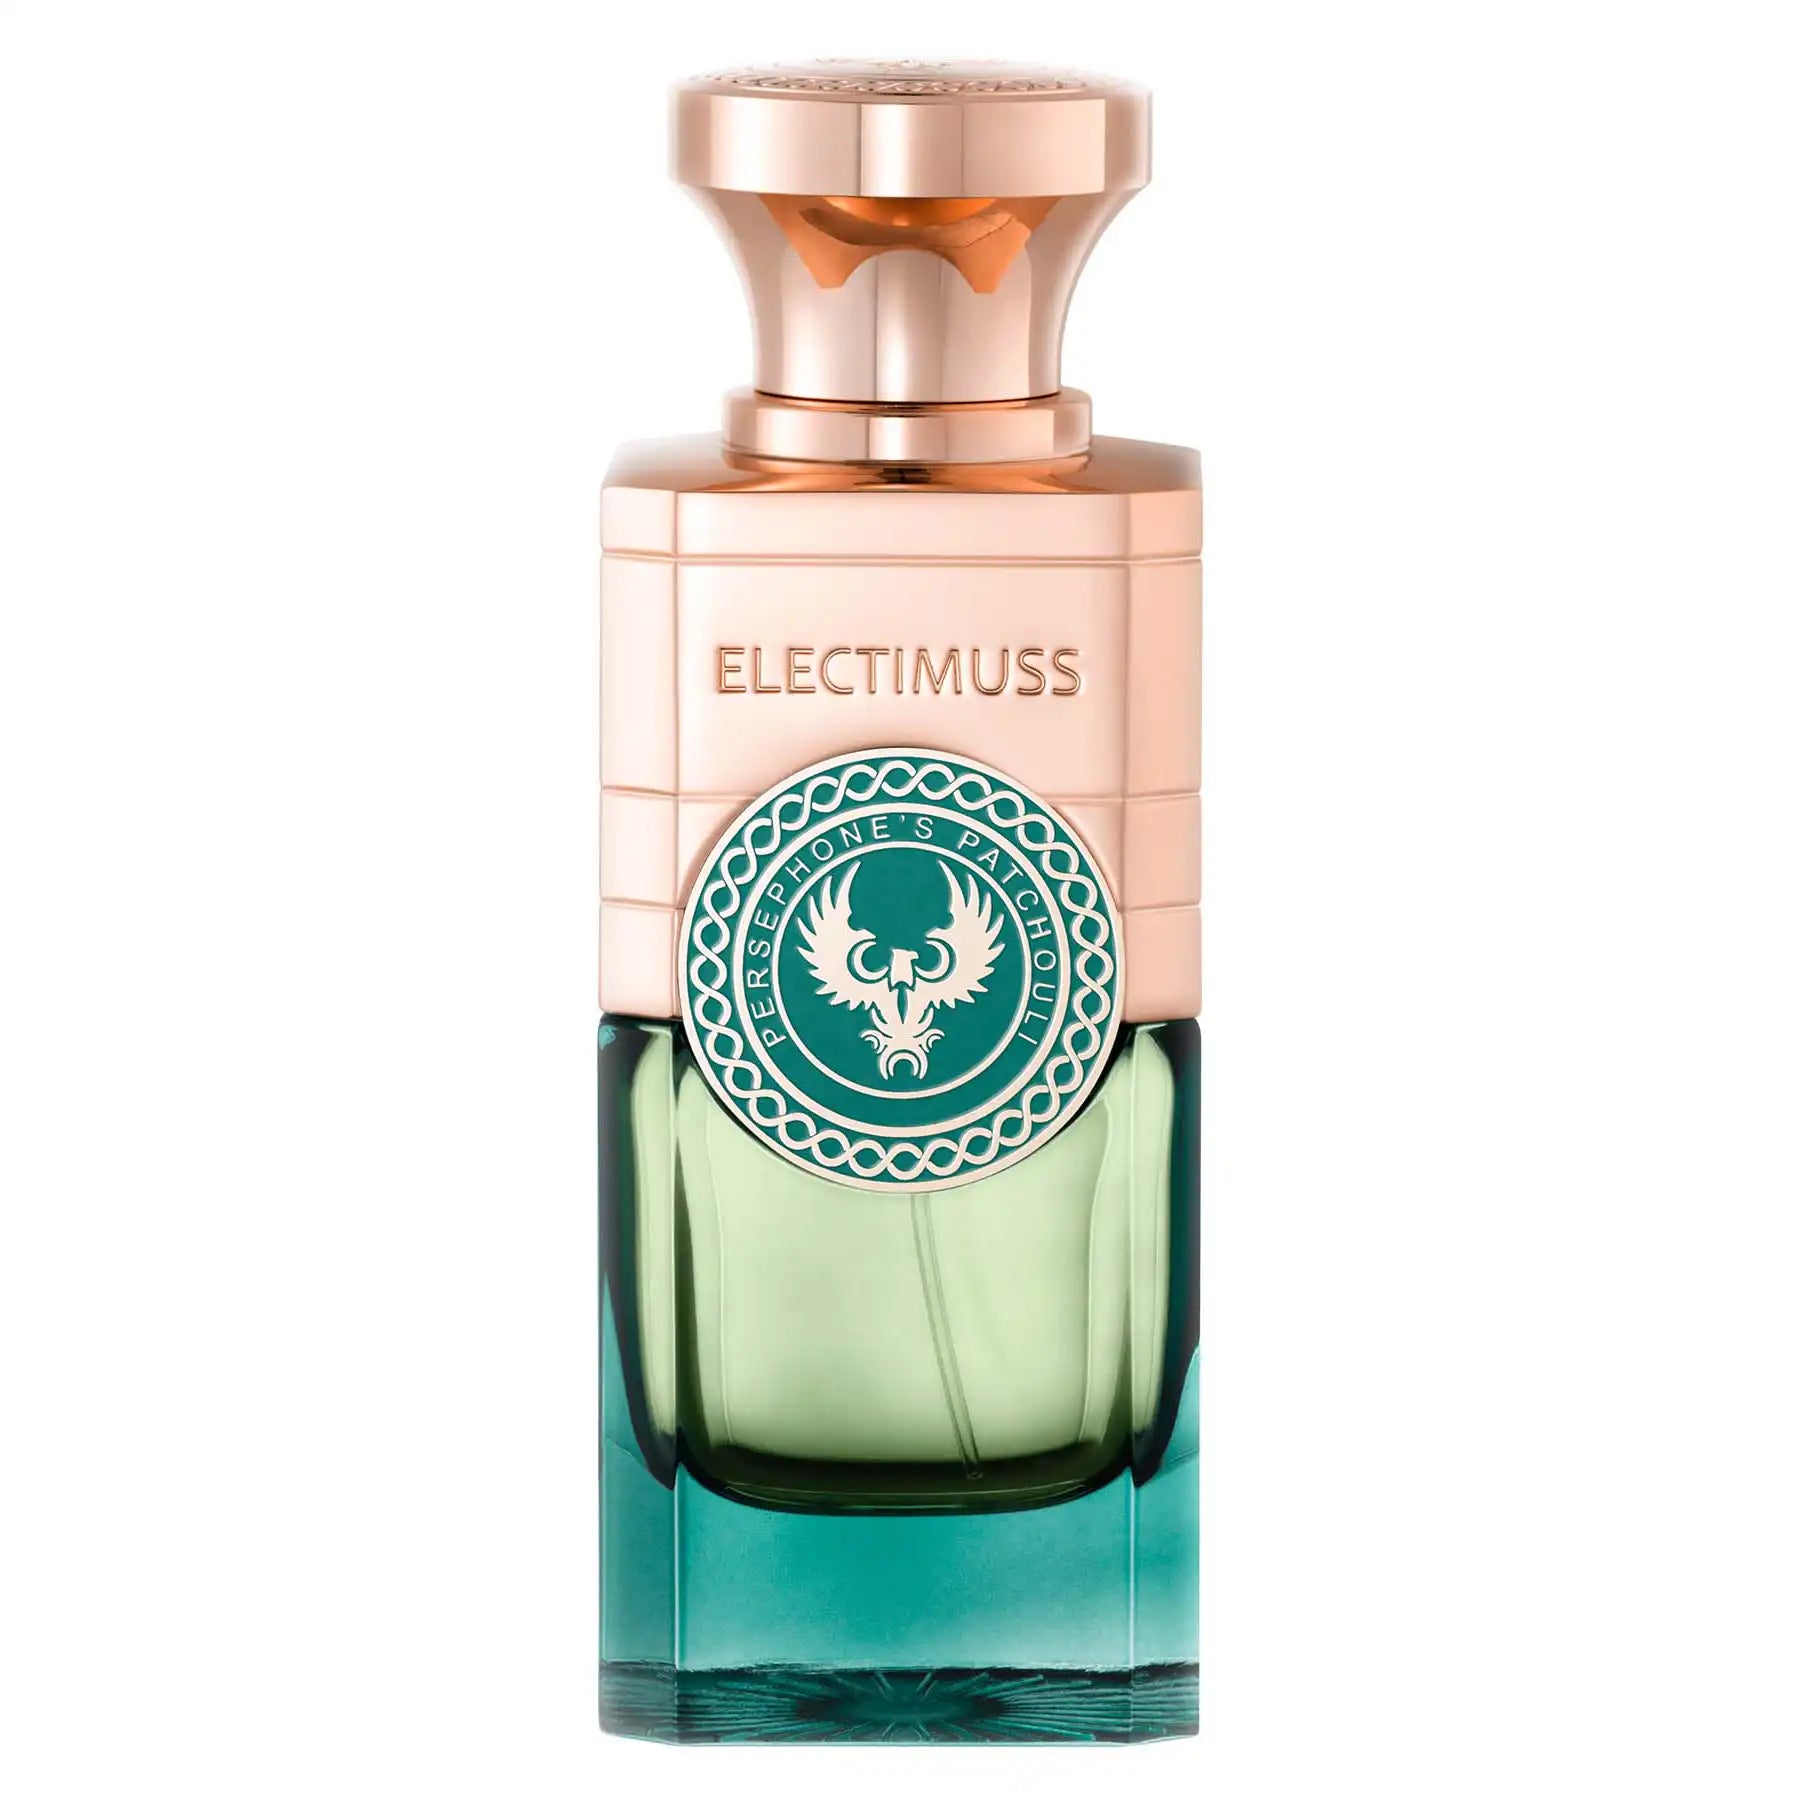 Electimuss Persephone's Patchouli Extrait de Parfum 100ml